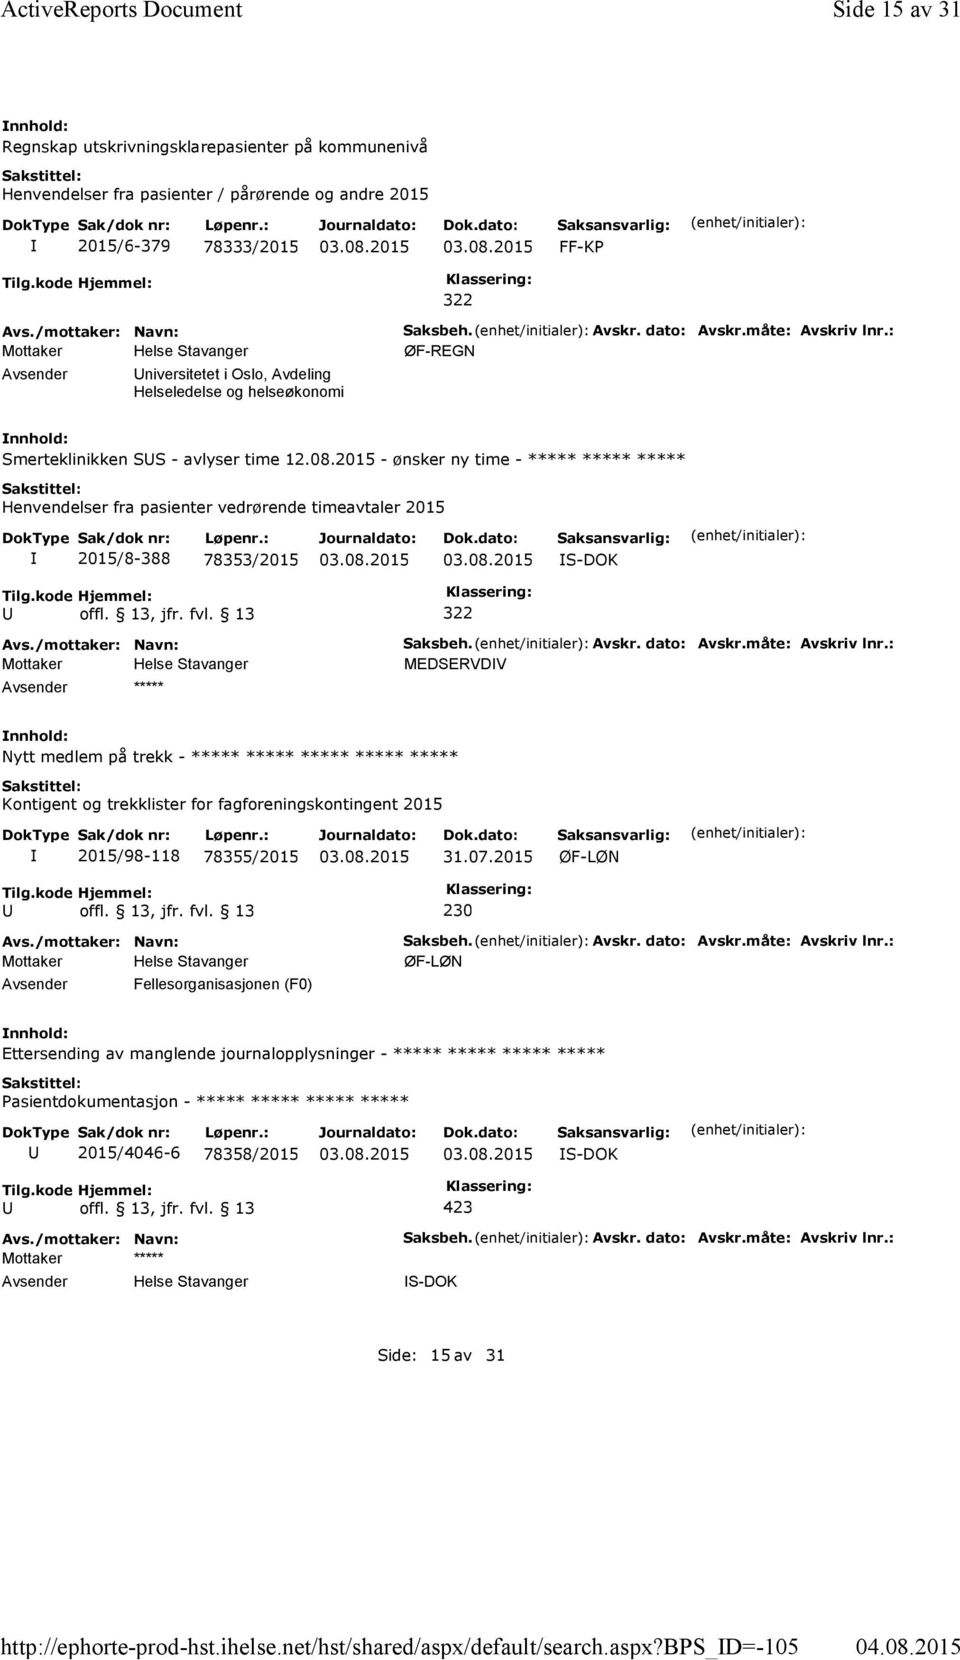 bps_d=-105 Side 15 av 31 Regnskap utskrivningsklarepasienter på kommunenivå Henvendelser fra pasienter / pårørende og andre 2015 2015/6-379 78333/2015 FF-KP 322 niversitetet i Oslo, Avdeling